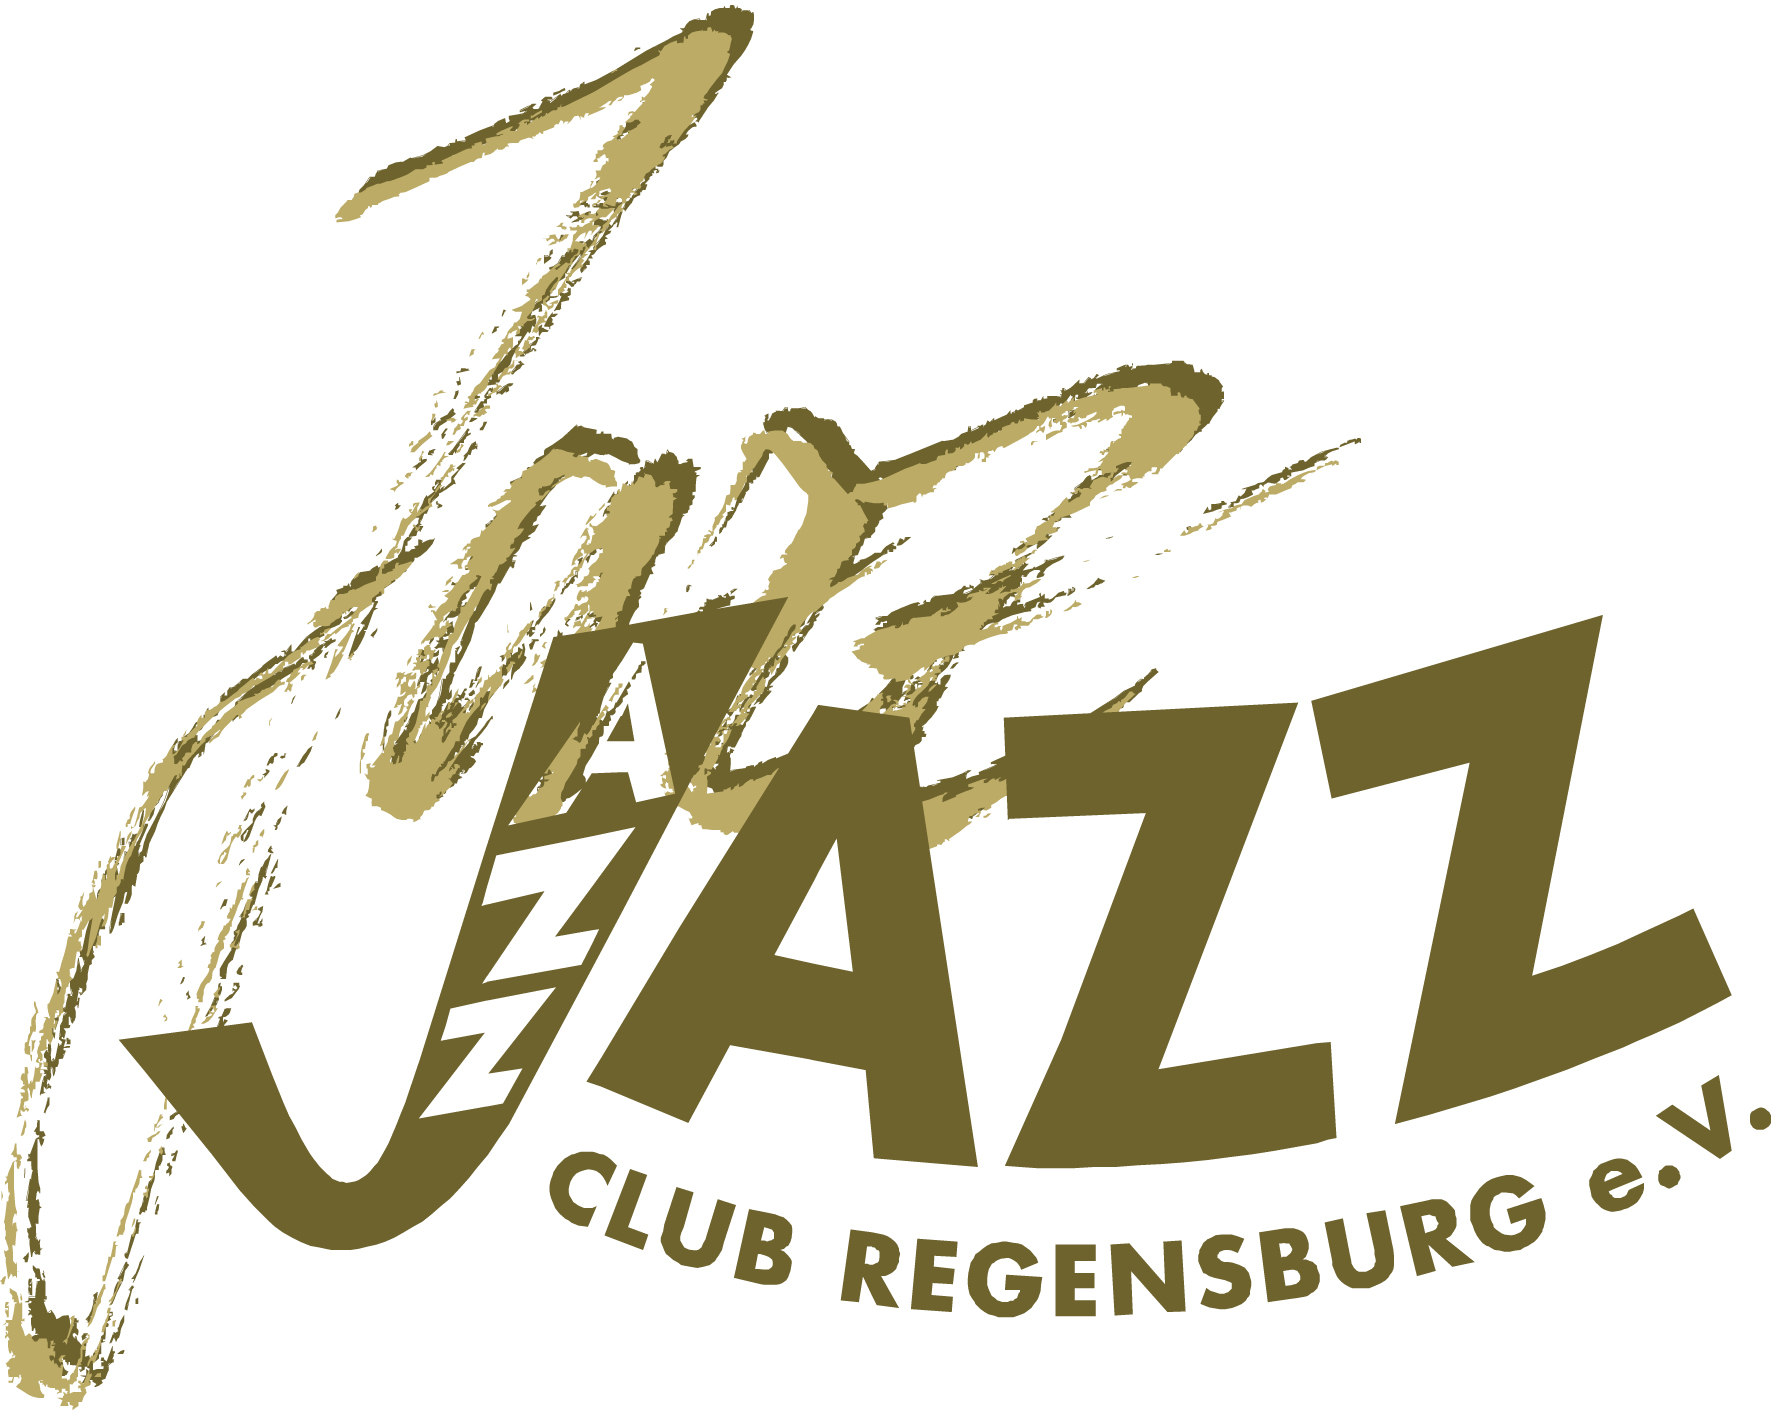 Jazzclub